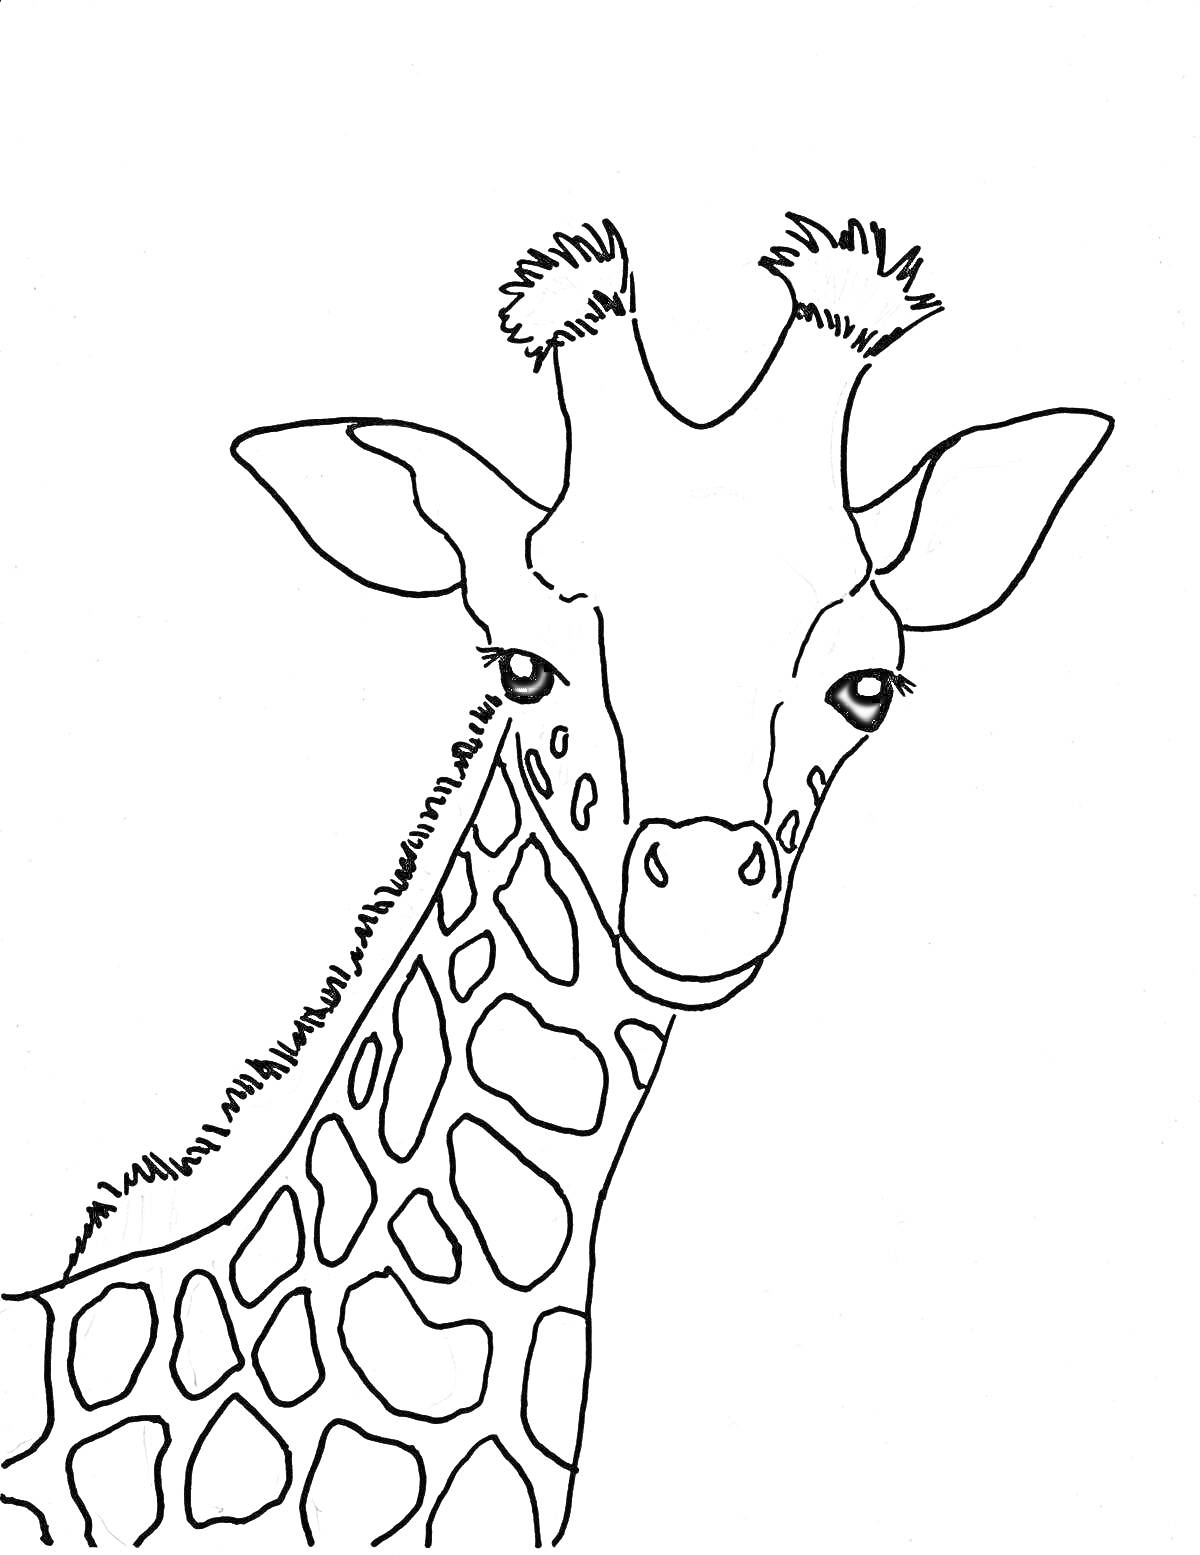 Раскраска Раскраска жирафа с длинной шеей и пятнами на теле